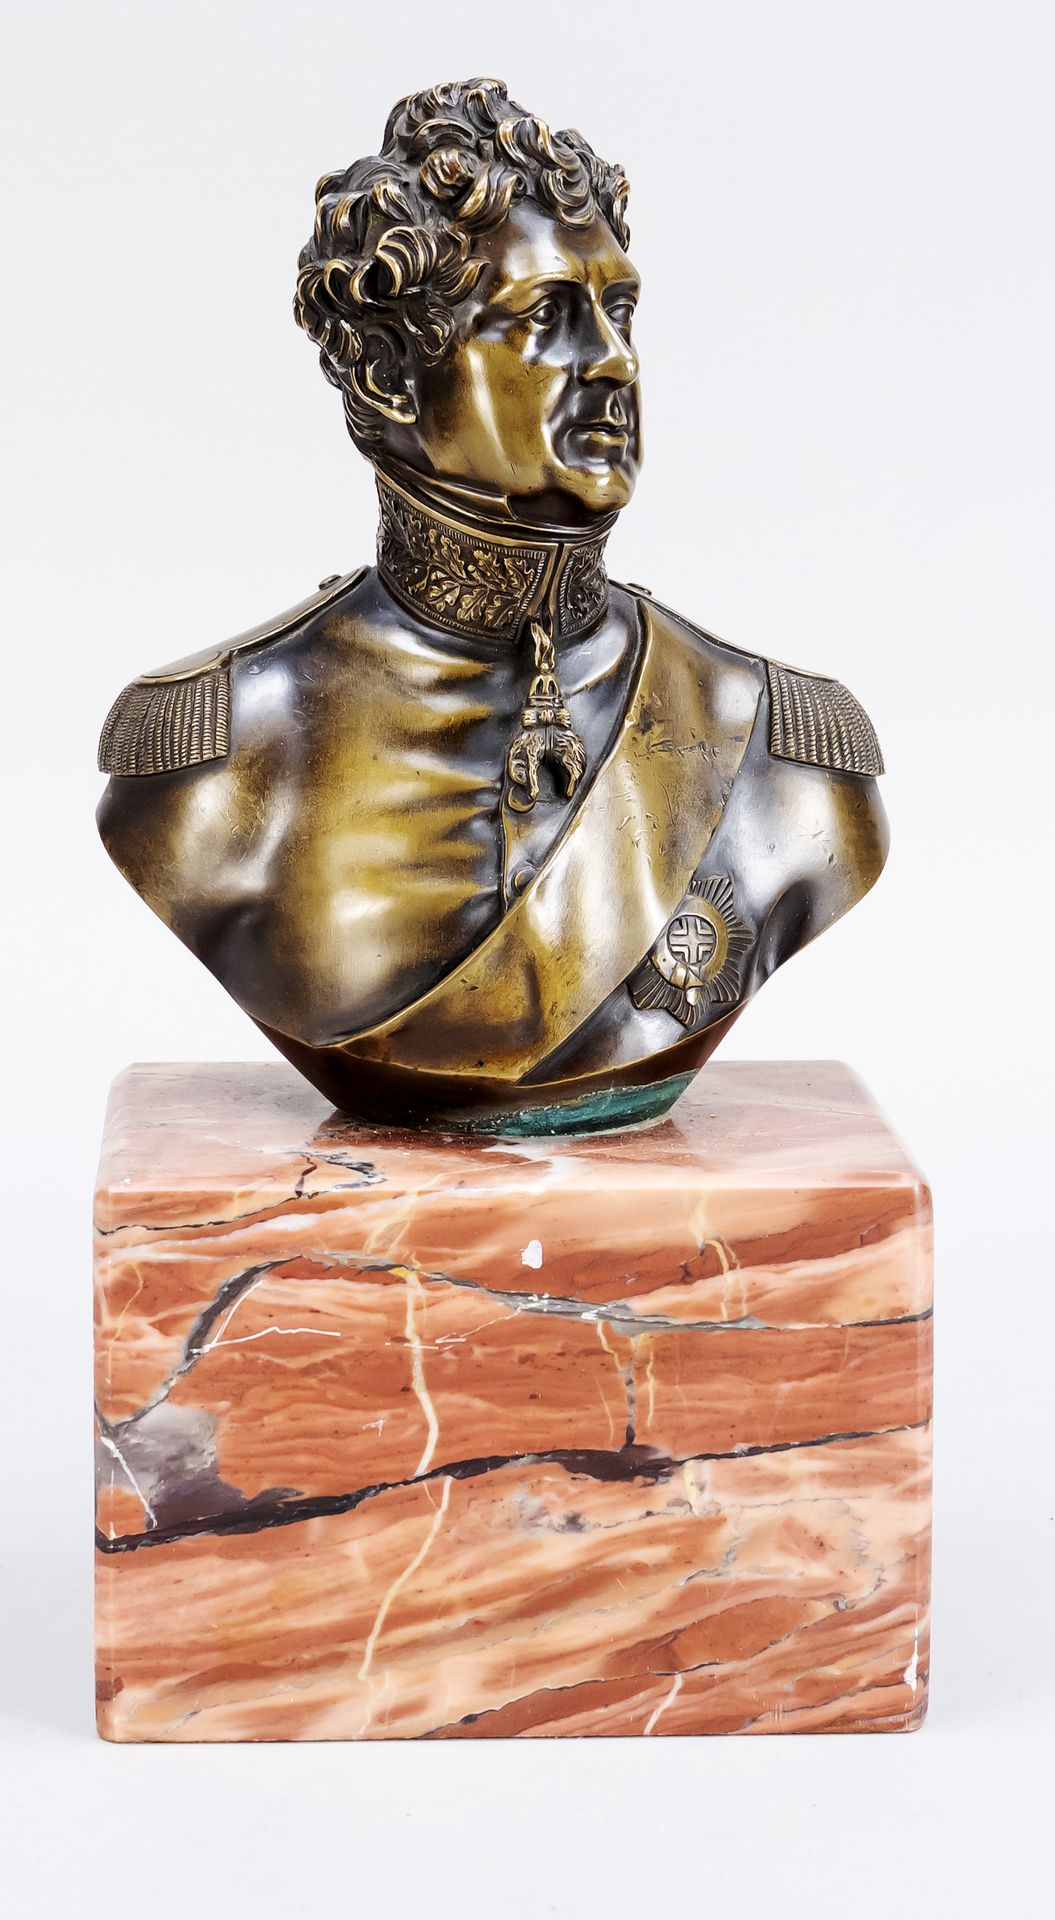 Null 匿名雕塑家，19世纪上半叶，解放战争时期的将军半身像，青铜，无签名，大理石底座，总高28厘米。